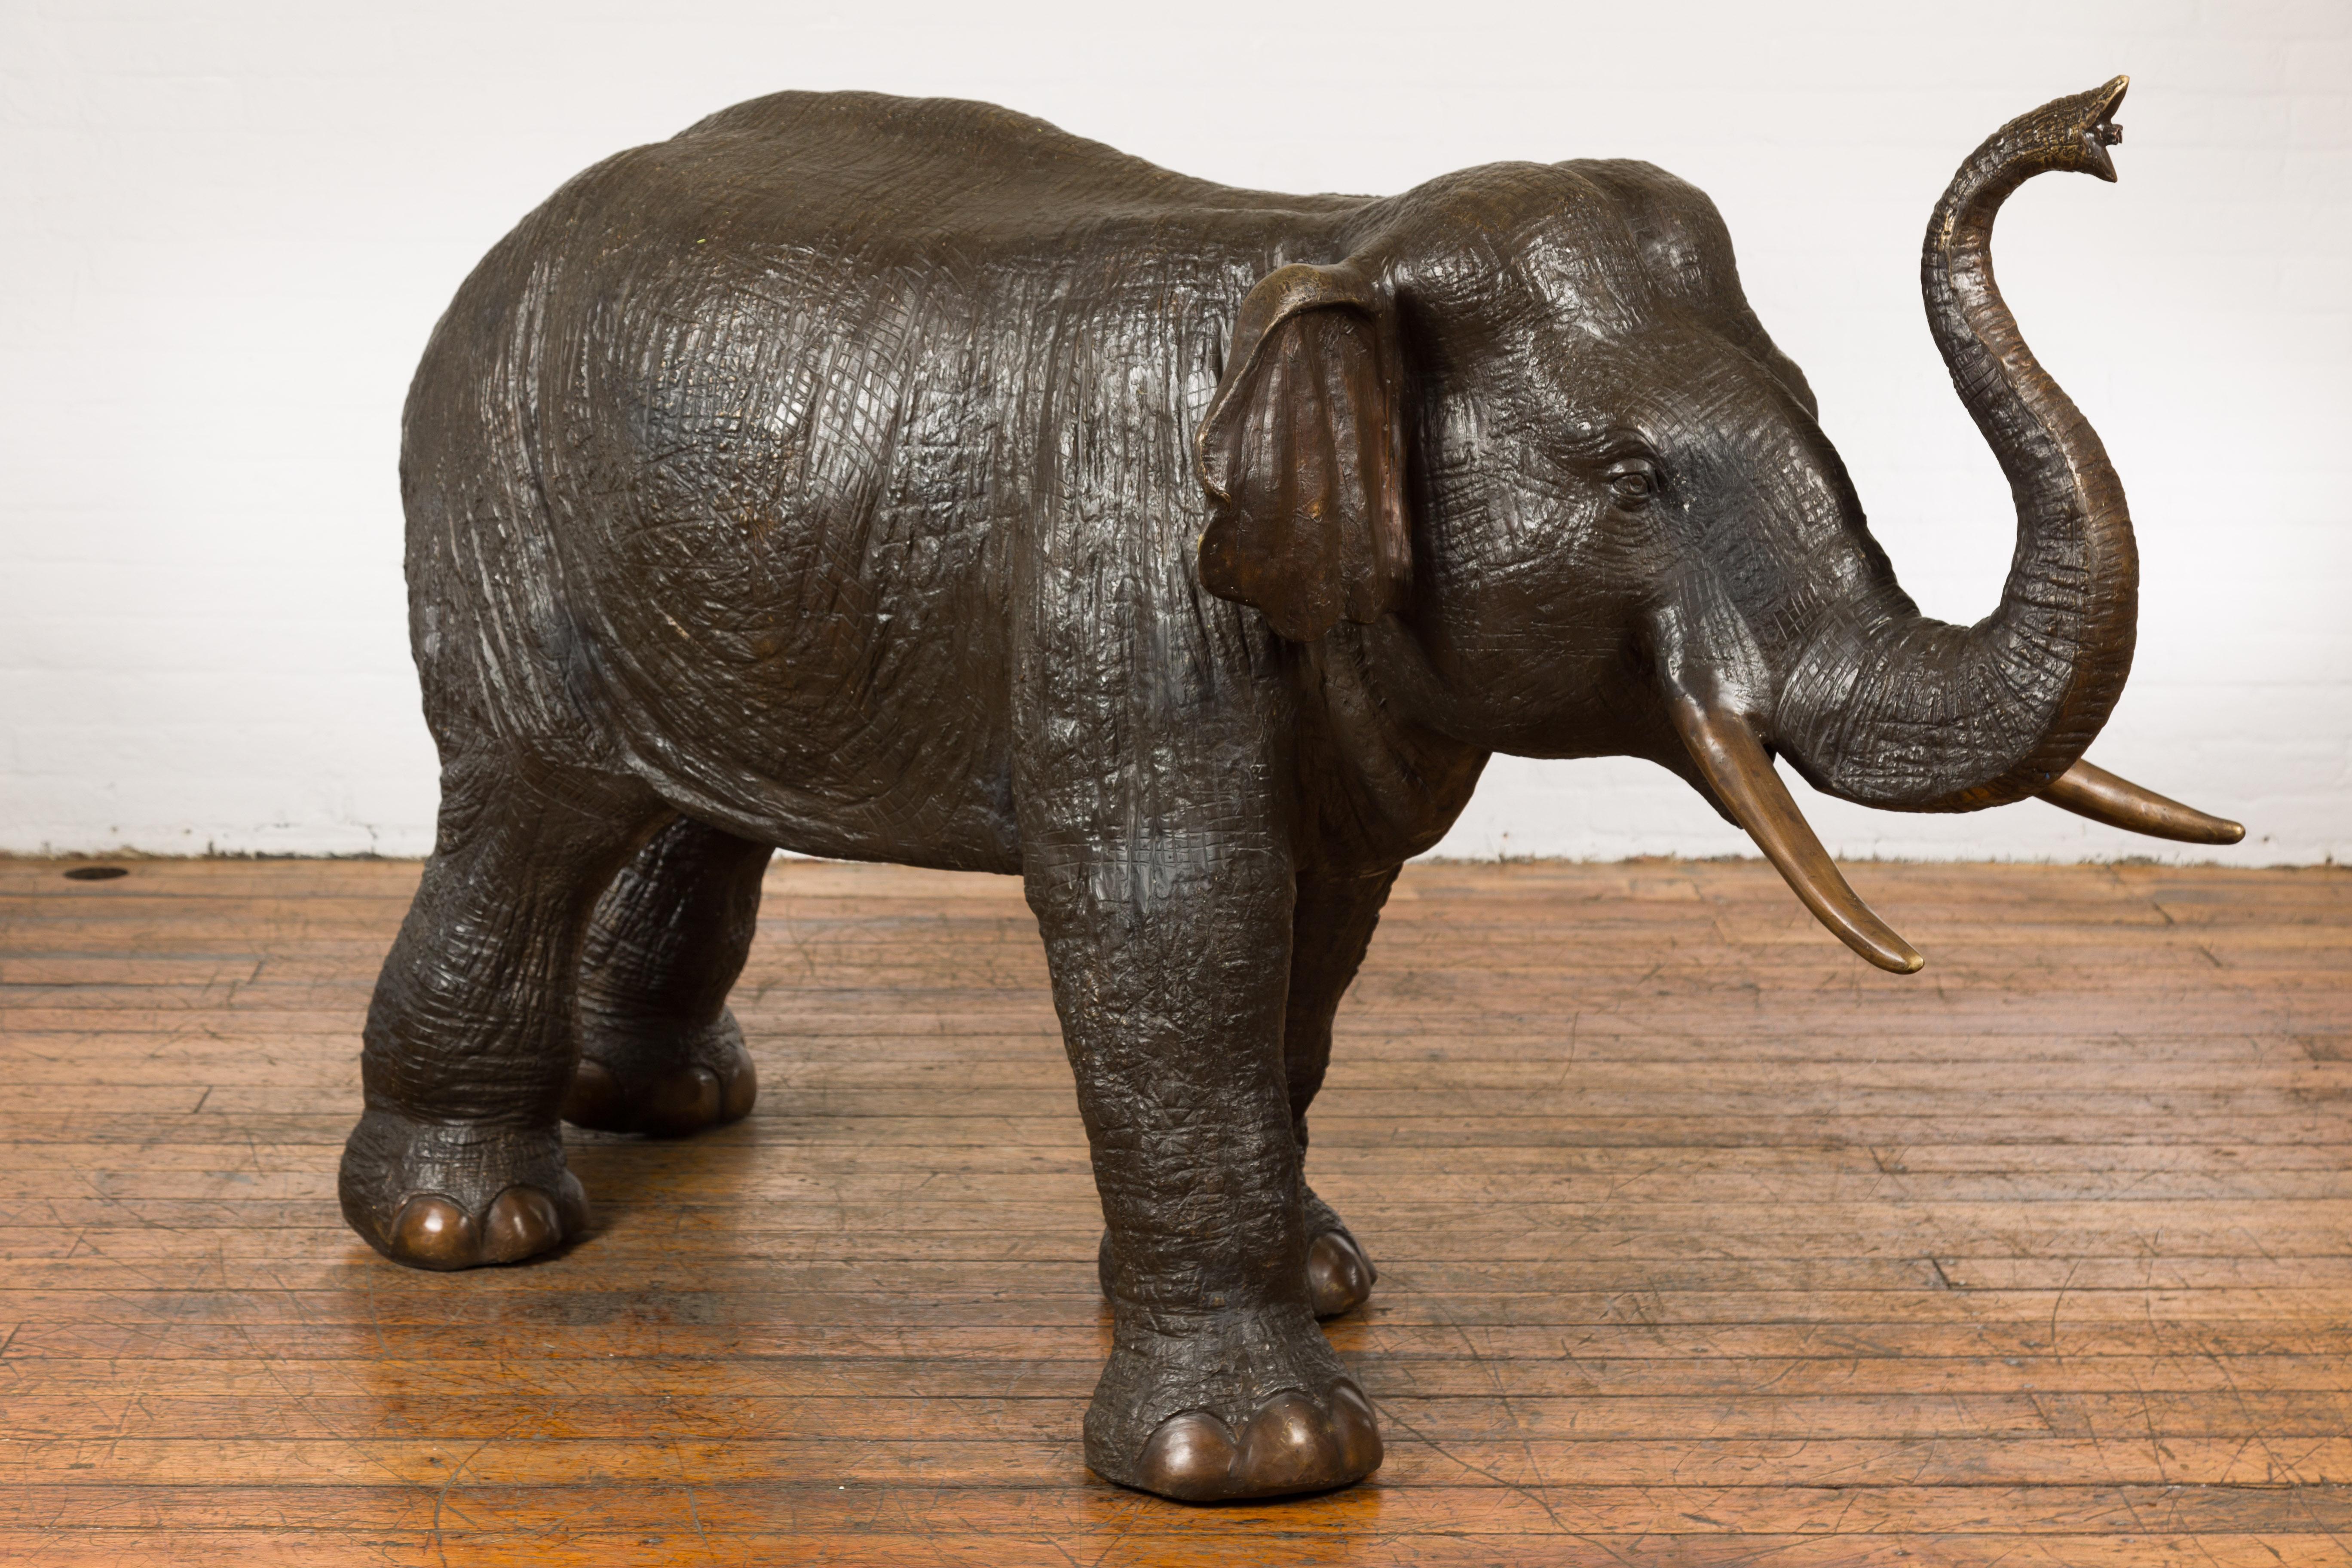 Importante sculpture d'éléphant en bronze, tubée comme une fontaine, réalisée selon le procédé de la cire perdue. Élevez votre décor avec cette remarquable sculpture de jardin en bronze représentant un éléphant, conçue de manière unique pour faire